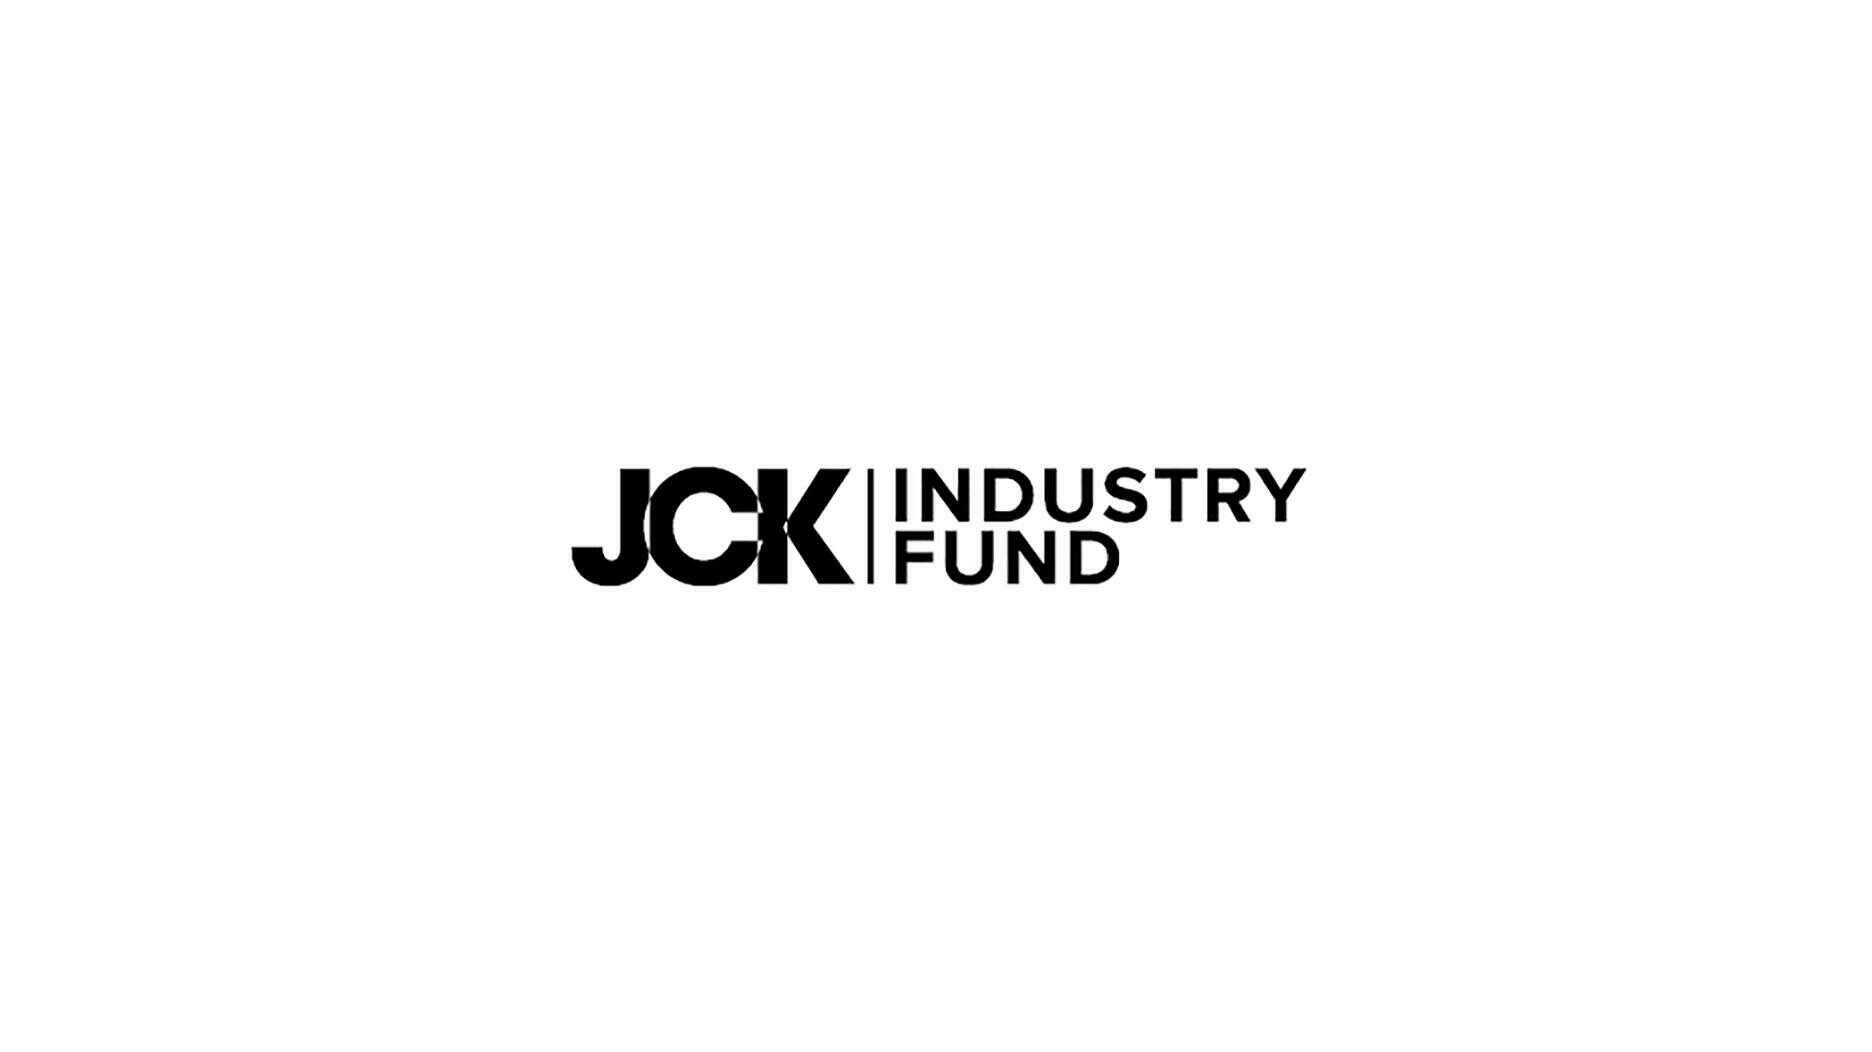 JCK Industry Fund